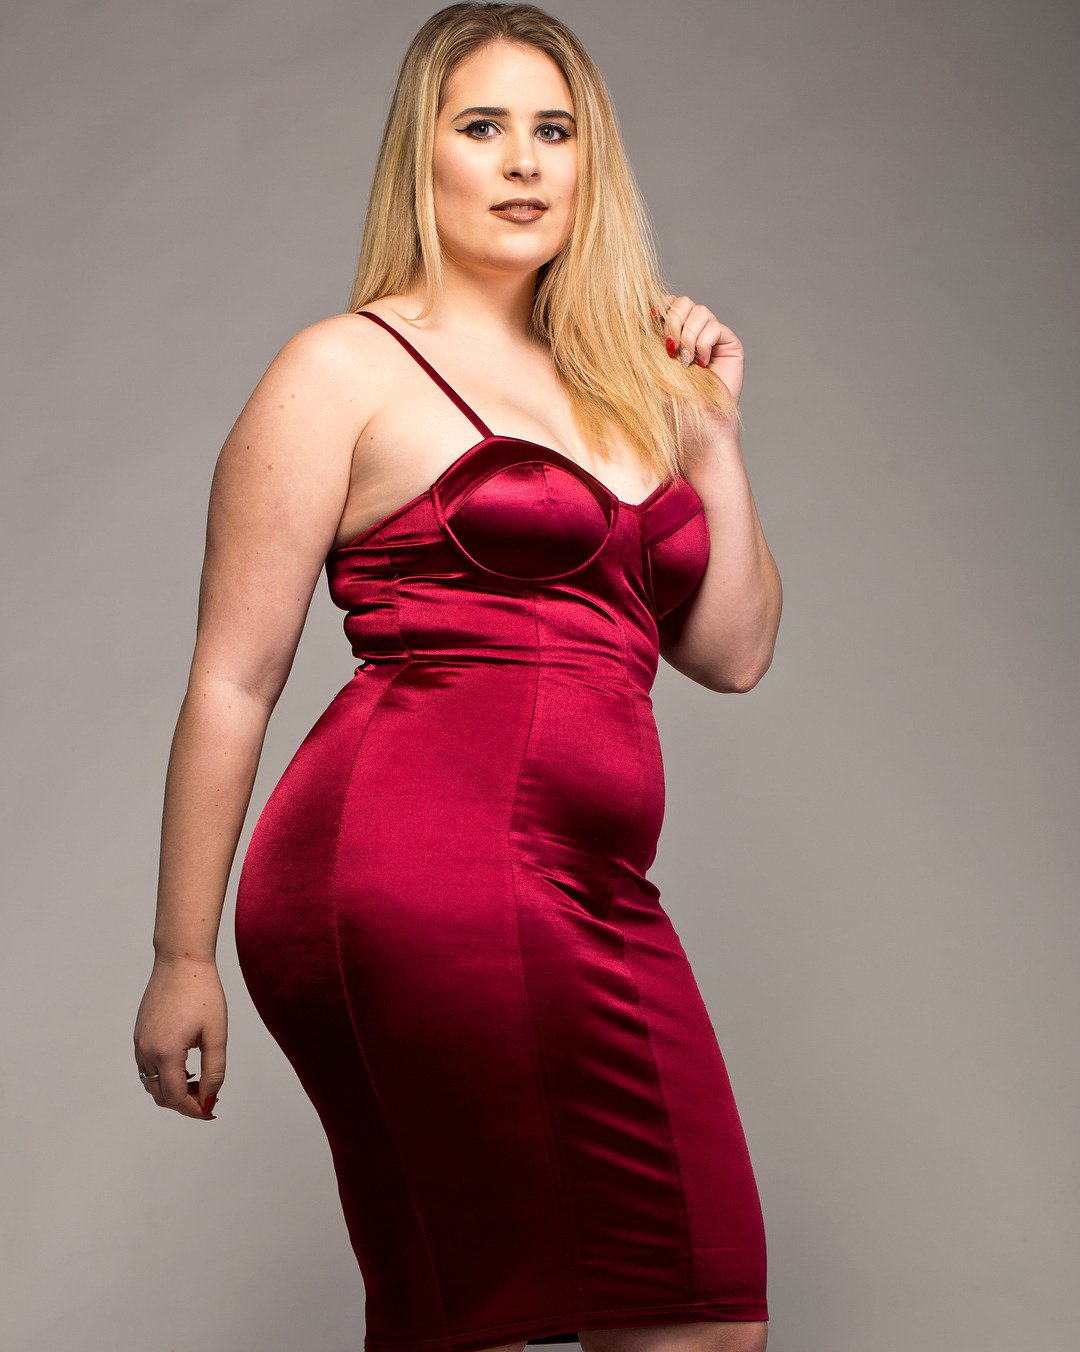 Plus Size Women Twitter'da: "RT #Plussize Curvy Model from I